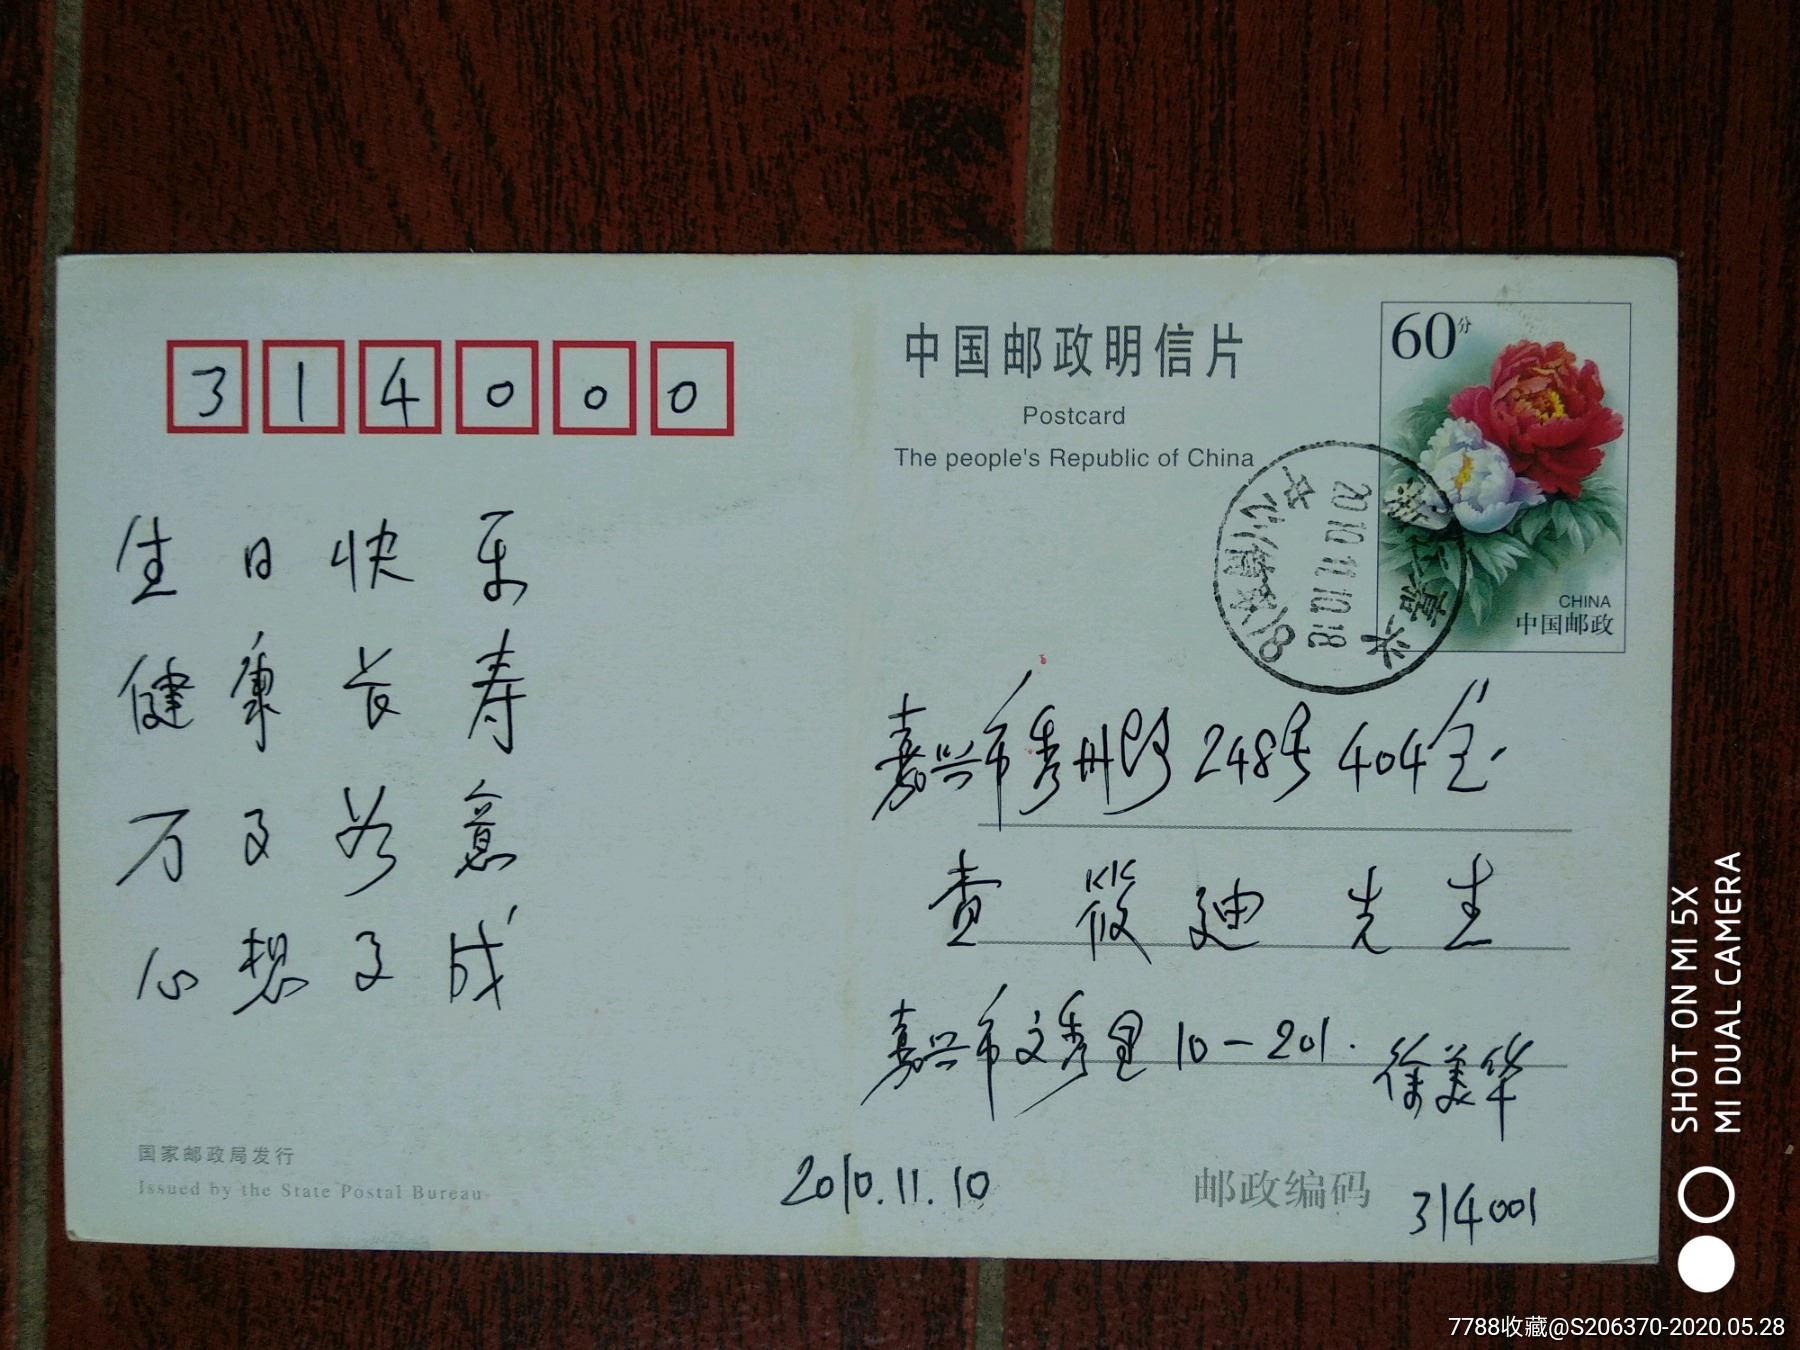 嘉兴电力局首届文化艺术节暨中华人民共和国成立50周年纪念明信片